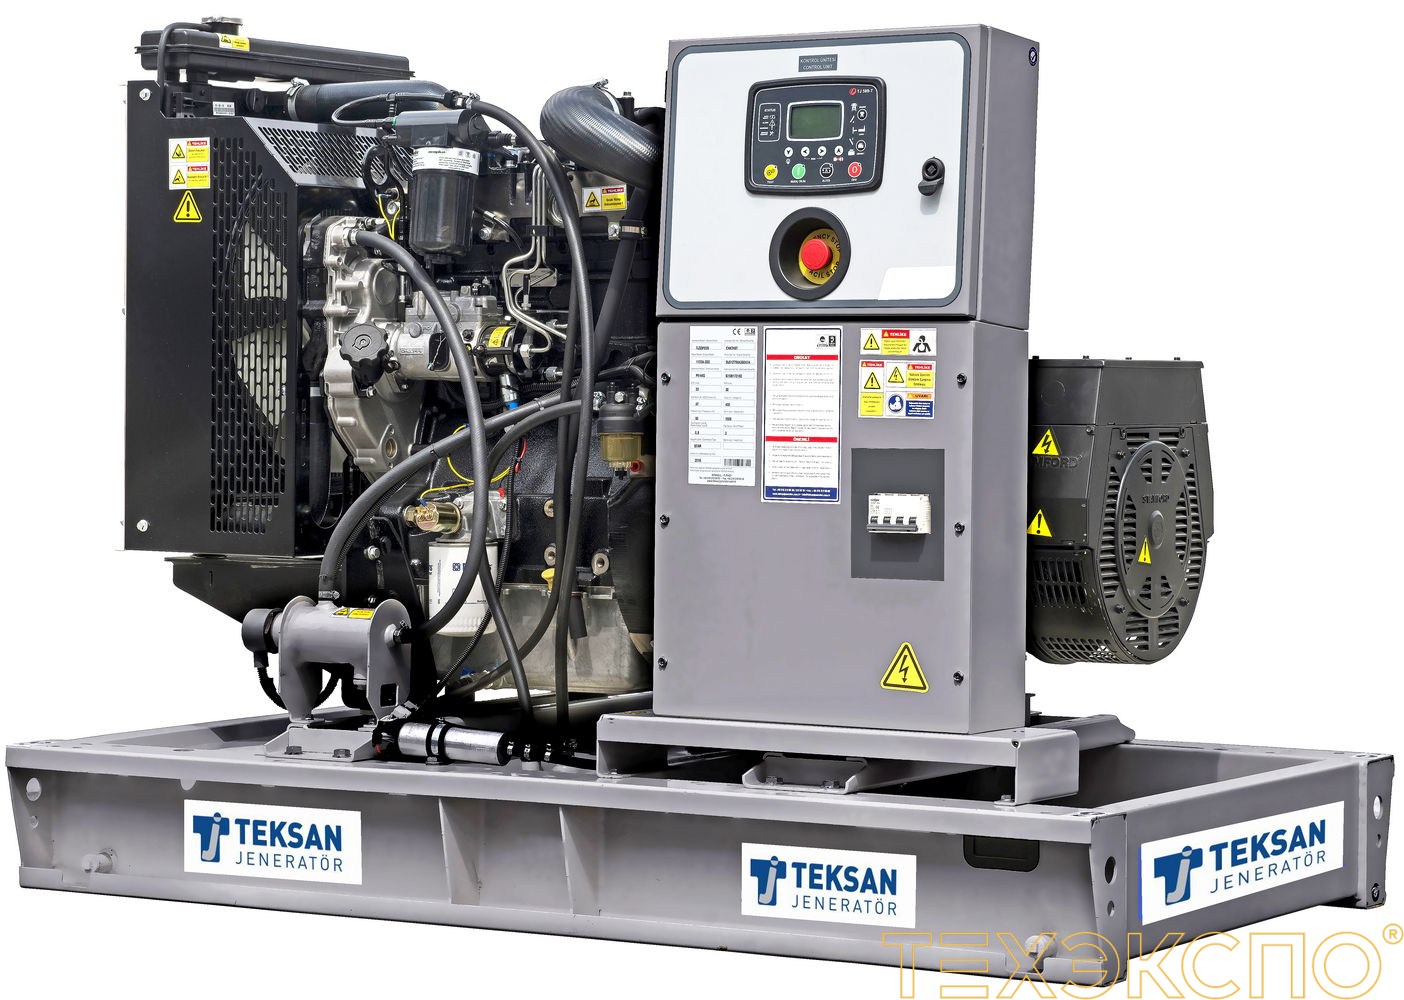 Teksan  TJ21PE5C  - ДЭС 15 кВт в Санкт-Петербурге за 663 573 рублей | Дизельная электростанция в Техэкспо